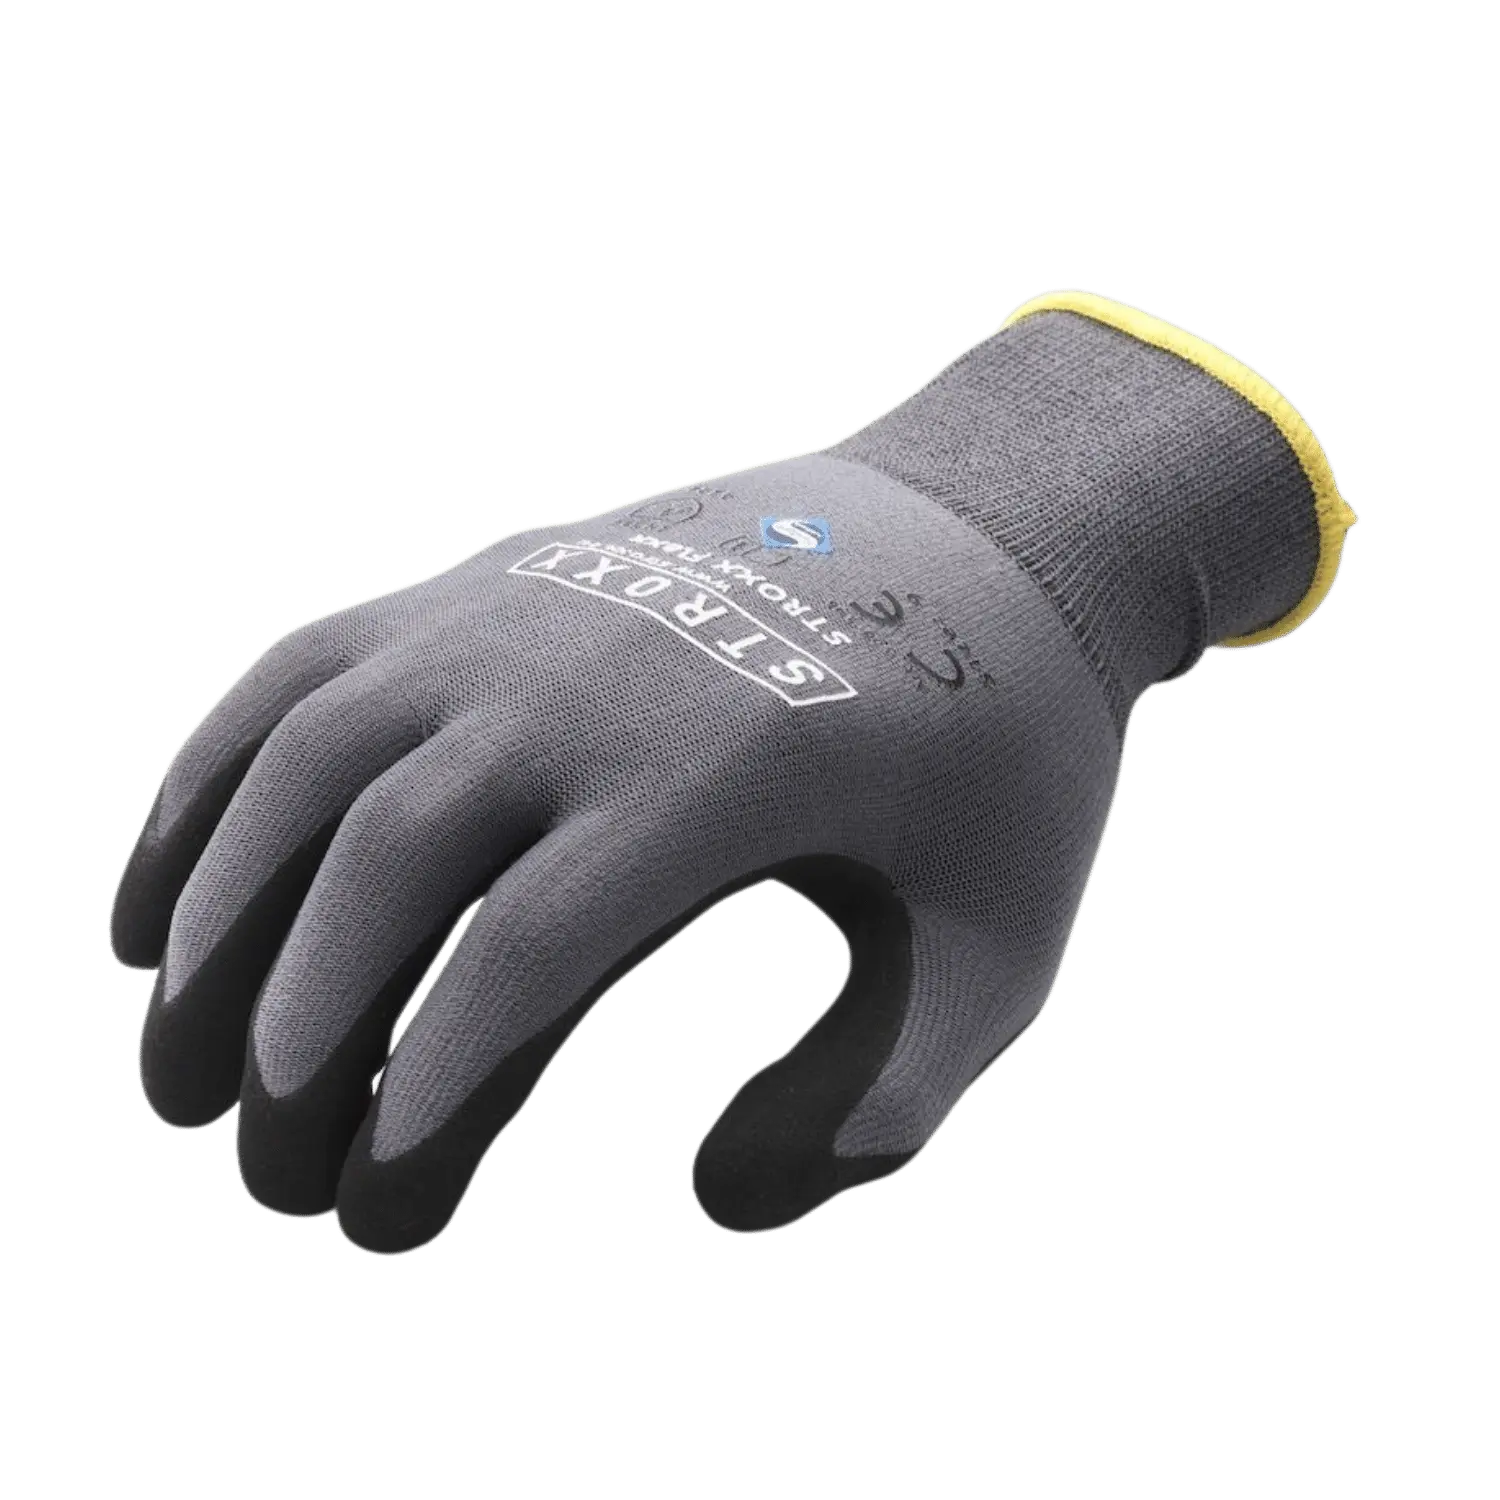 Grijszwarte STROXX handschoenen met gele rand. Extra bekleding op handpalmen en vingertoppen. Nitril coating.